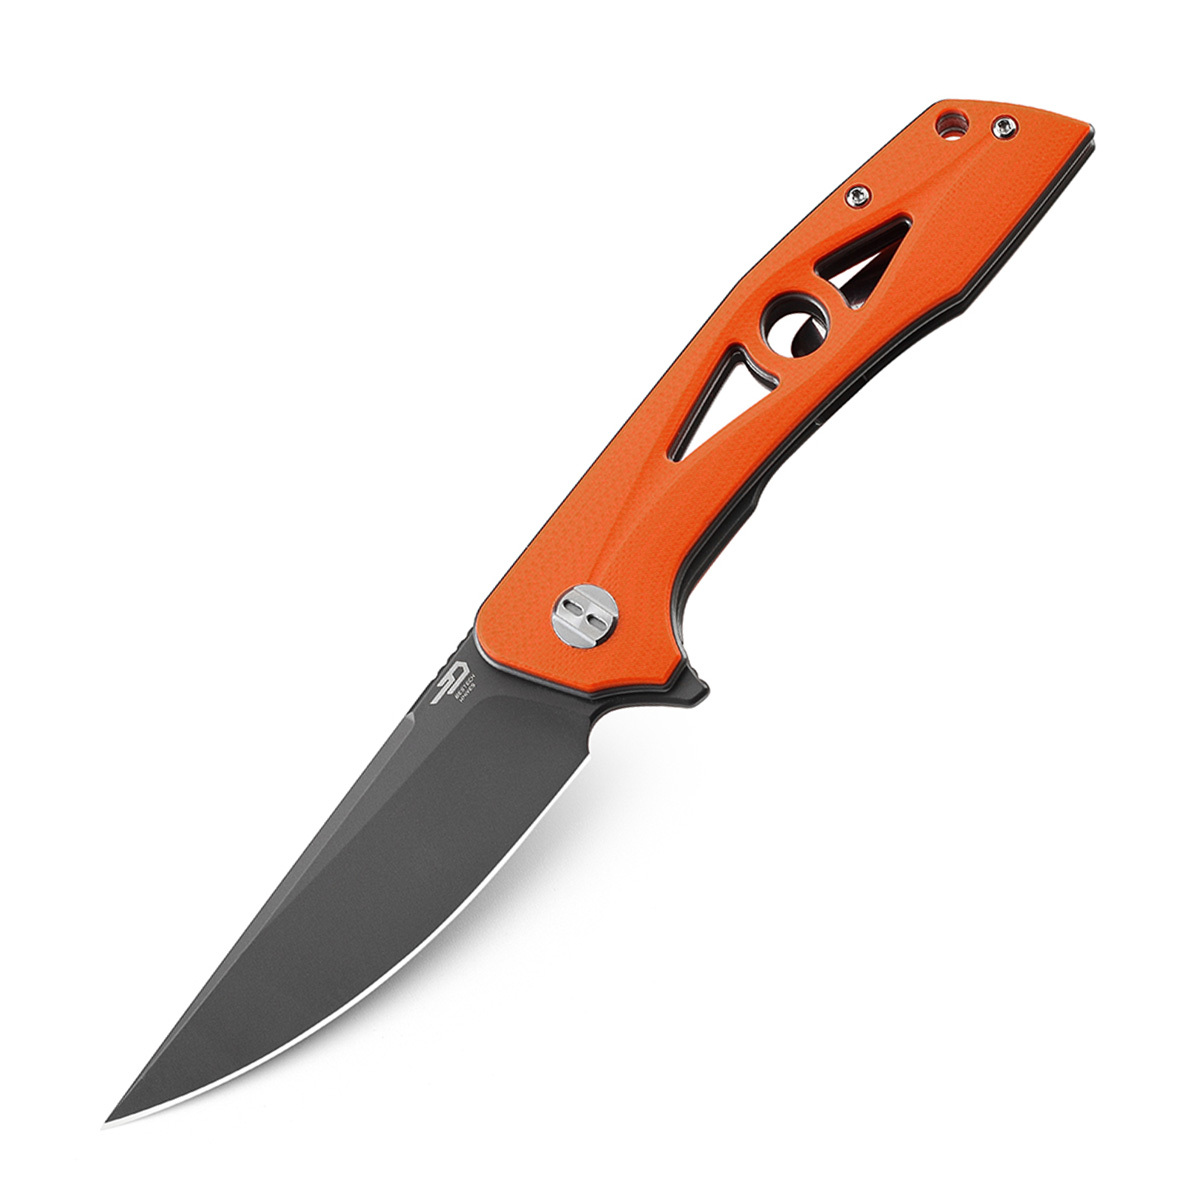 Складной нож Bestech Eye of Ra, сталь D2, рукоять оранжевая G10 складной нож bestech swordfish оранжевый d2